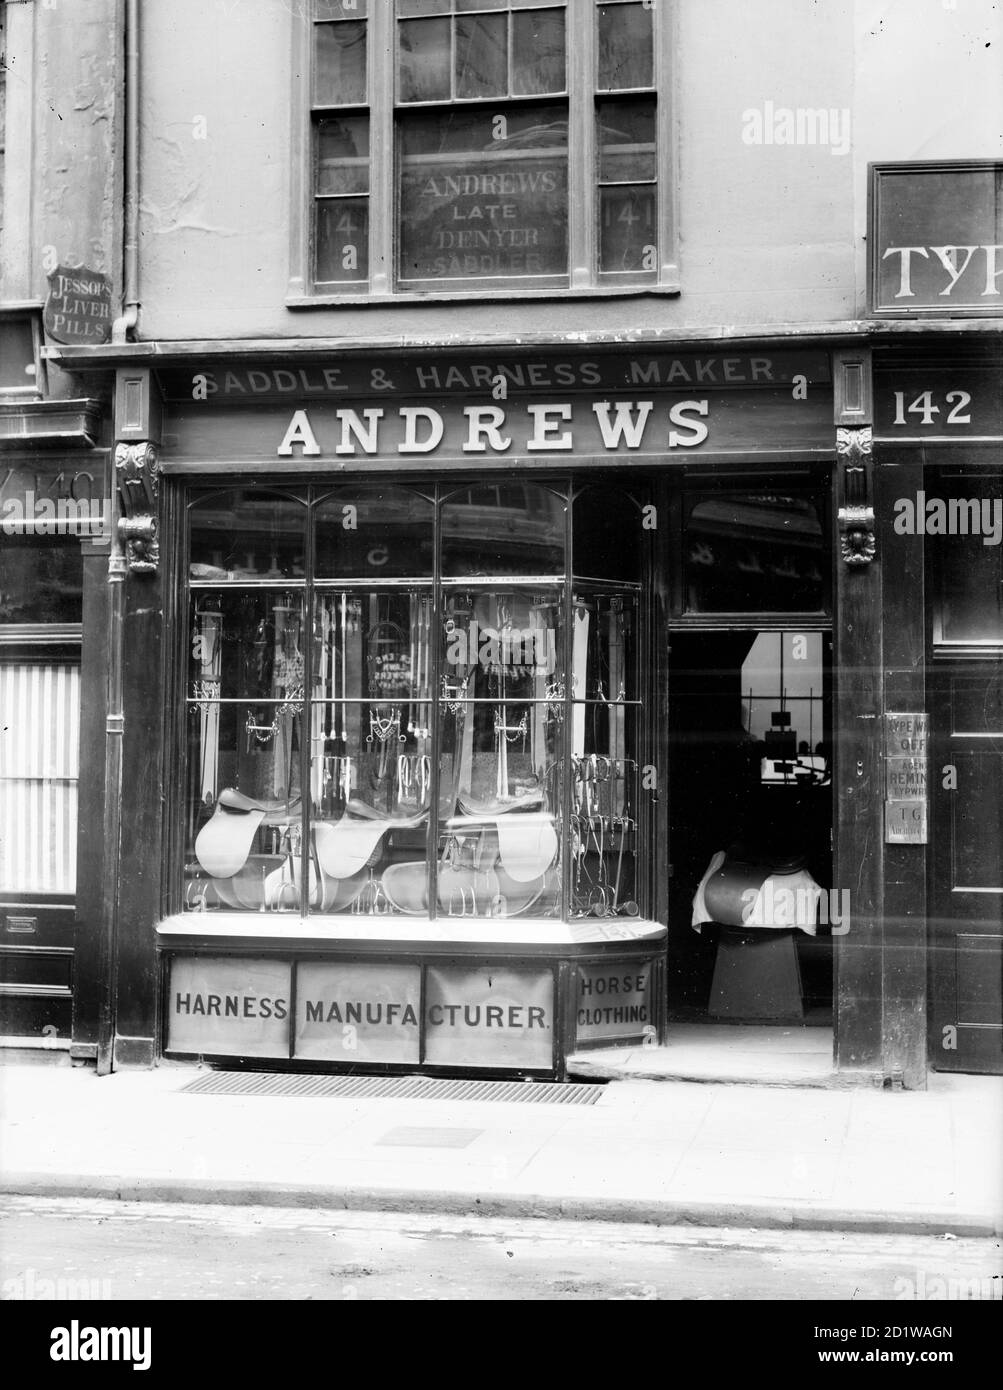 Andrews Shop, High Street, Oxford, Oxfordshire. Vista exterior de la fachada de una tienda de sillas y arneses. Foto de stock